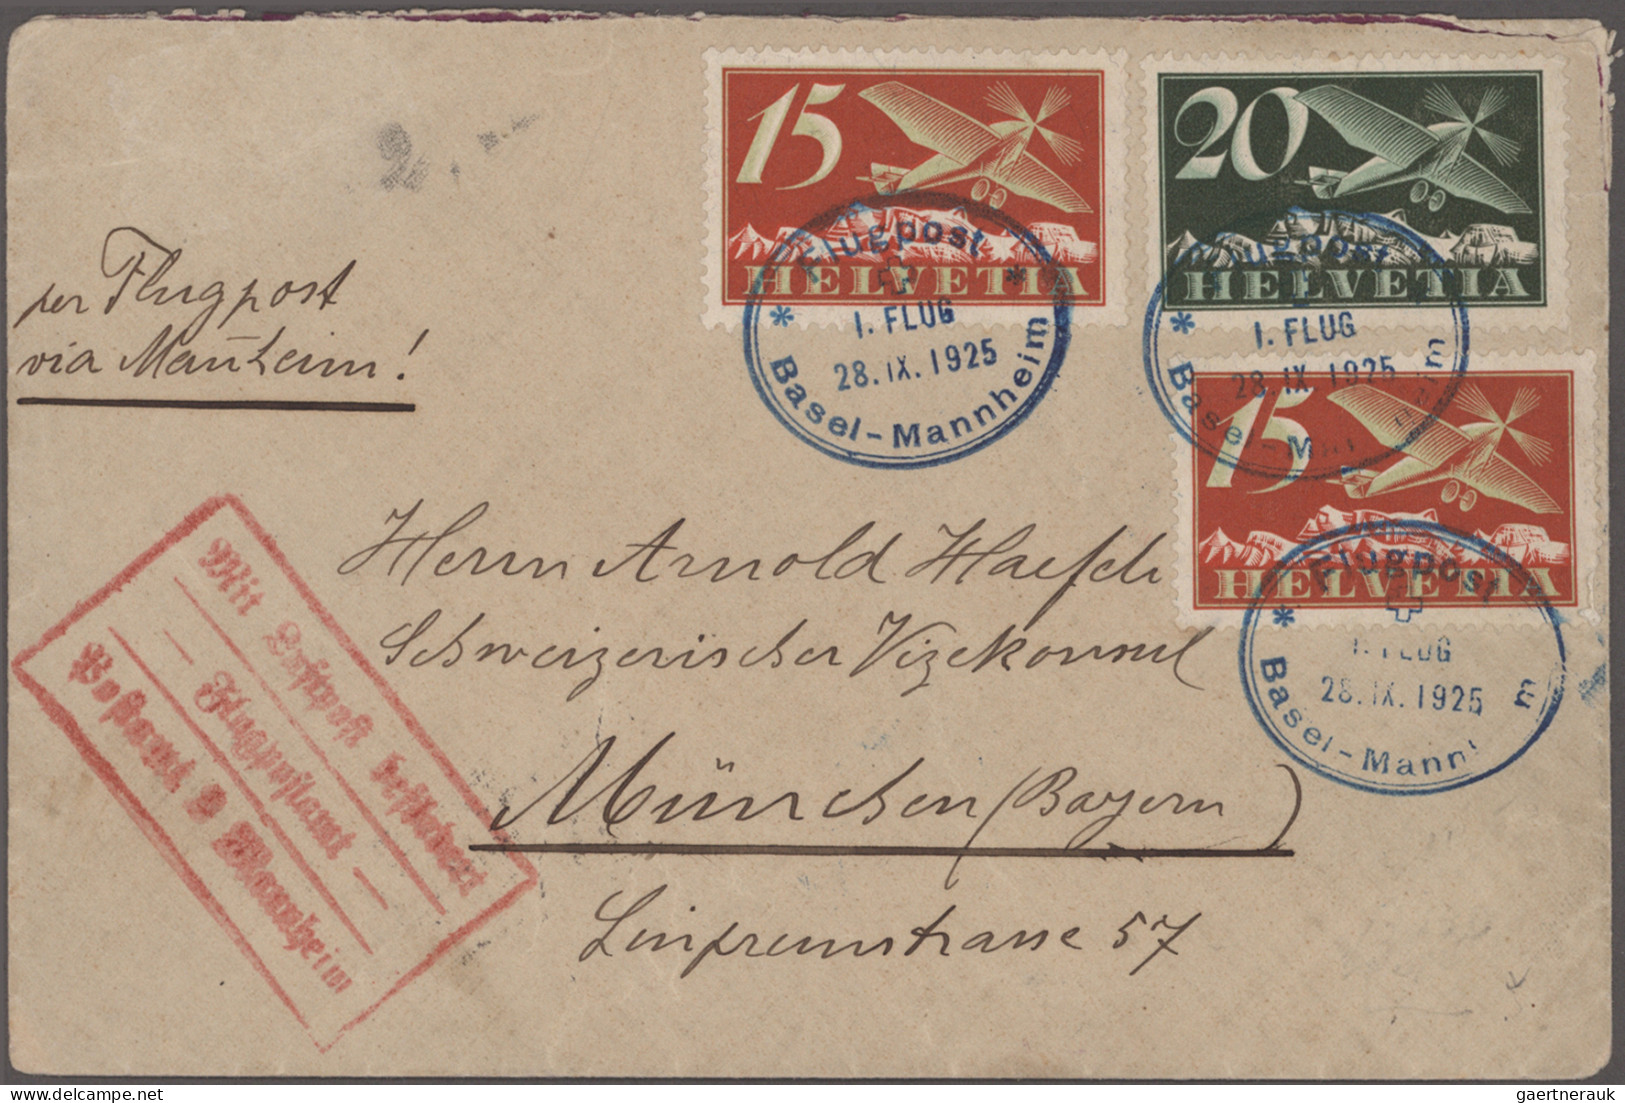 Schweiz: 1925-1957: 12 Luftpostbelege Ab Flugpost Basel-Mannheim 1925, Mit Zeppe - Sammlungen